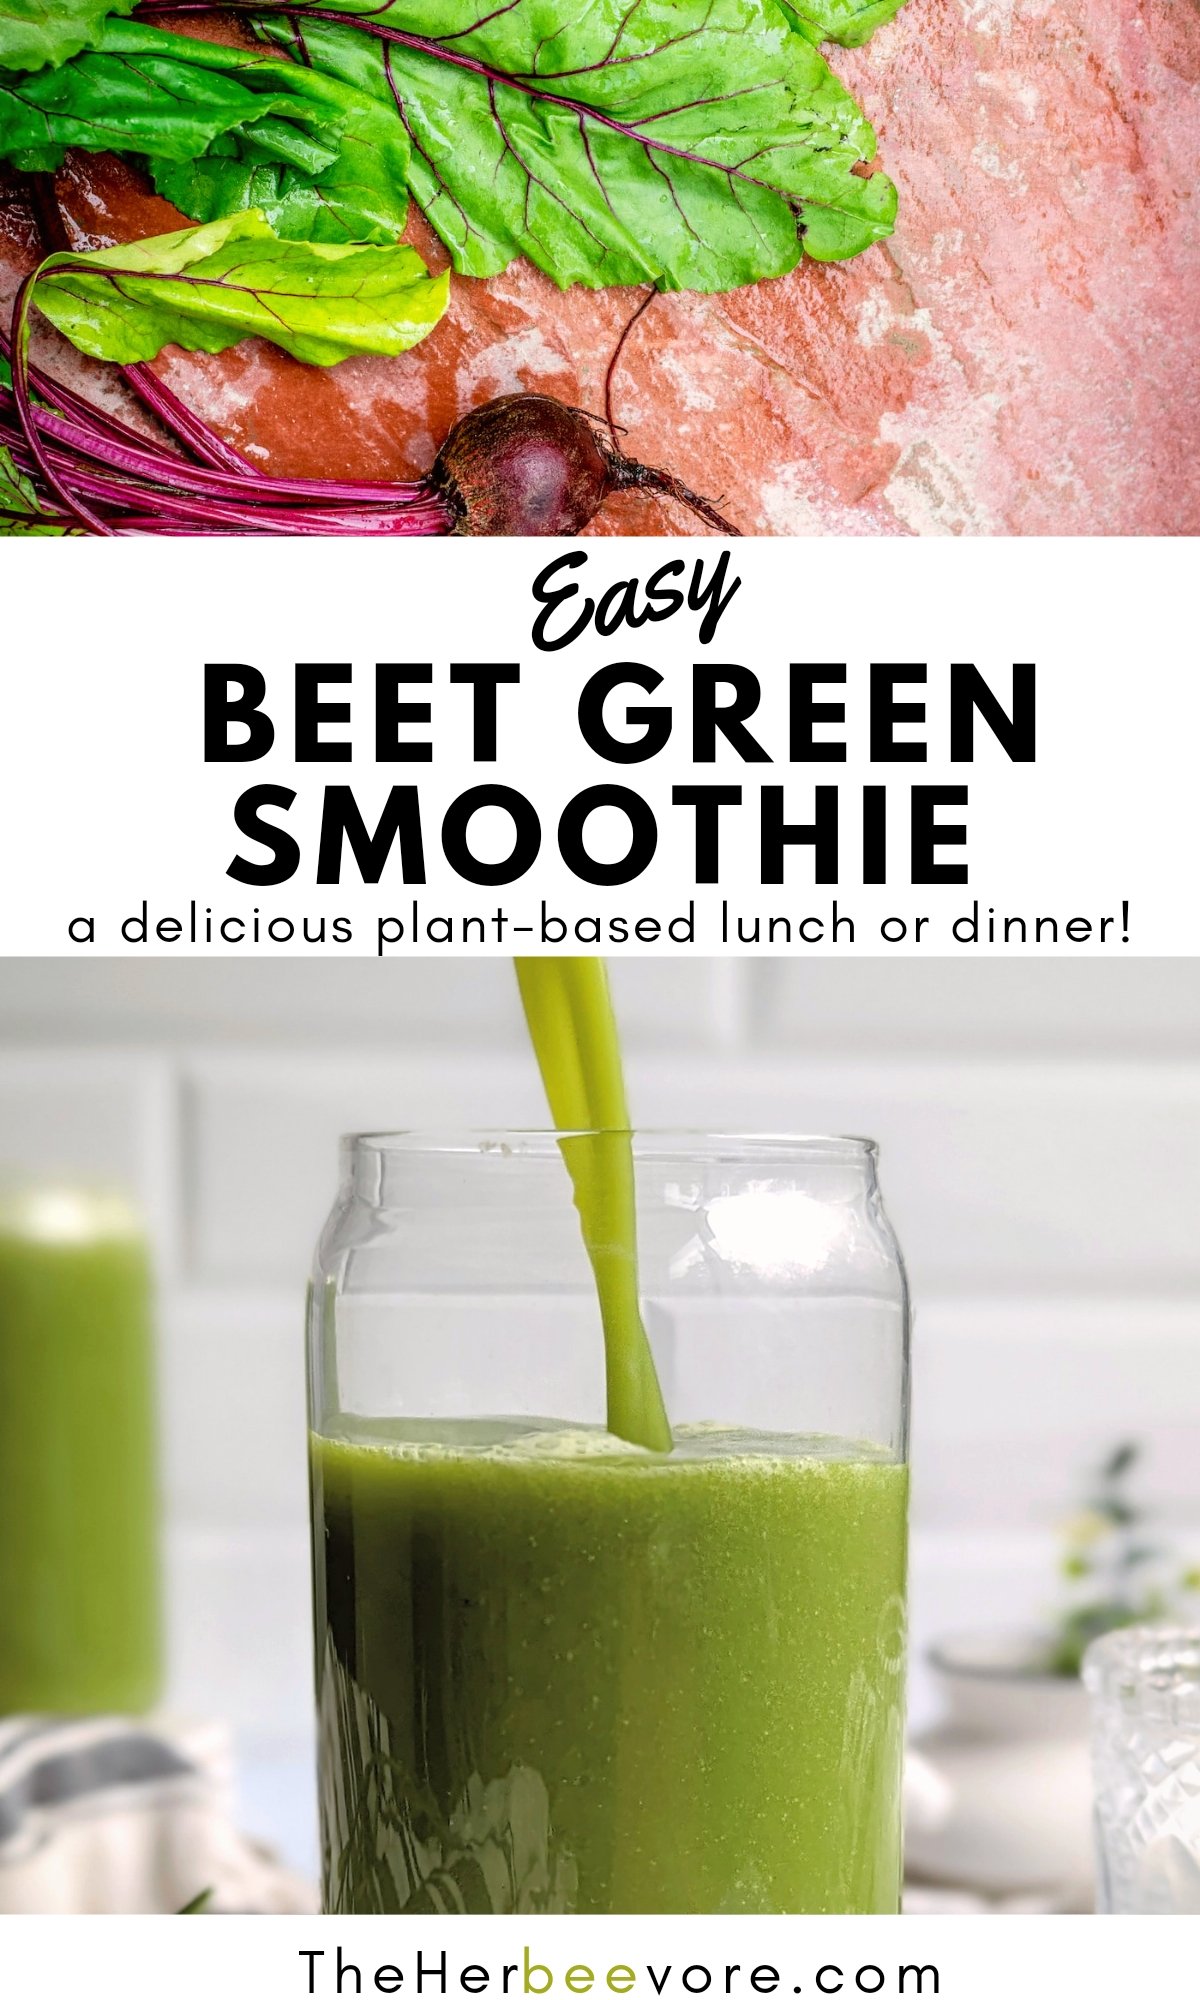 beet green smoothie recipe healthy beet greens smoothie vegan vegetarian gluten free high protein